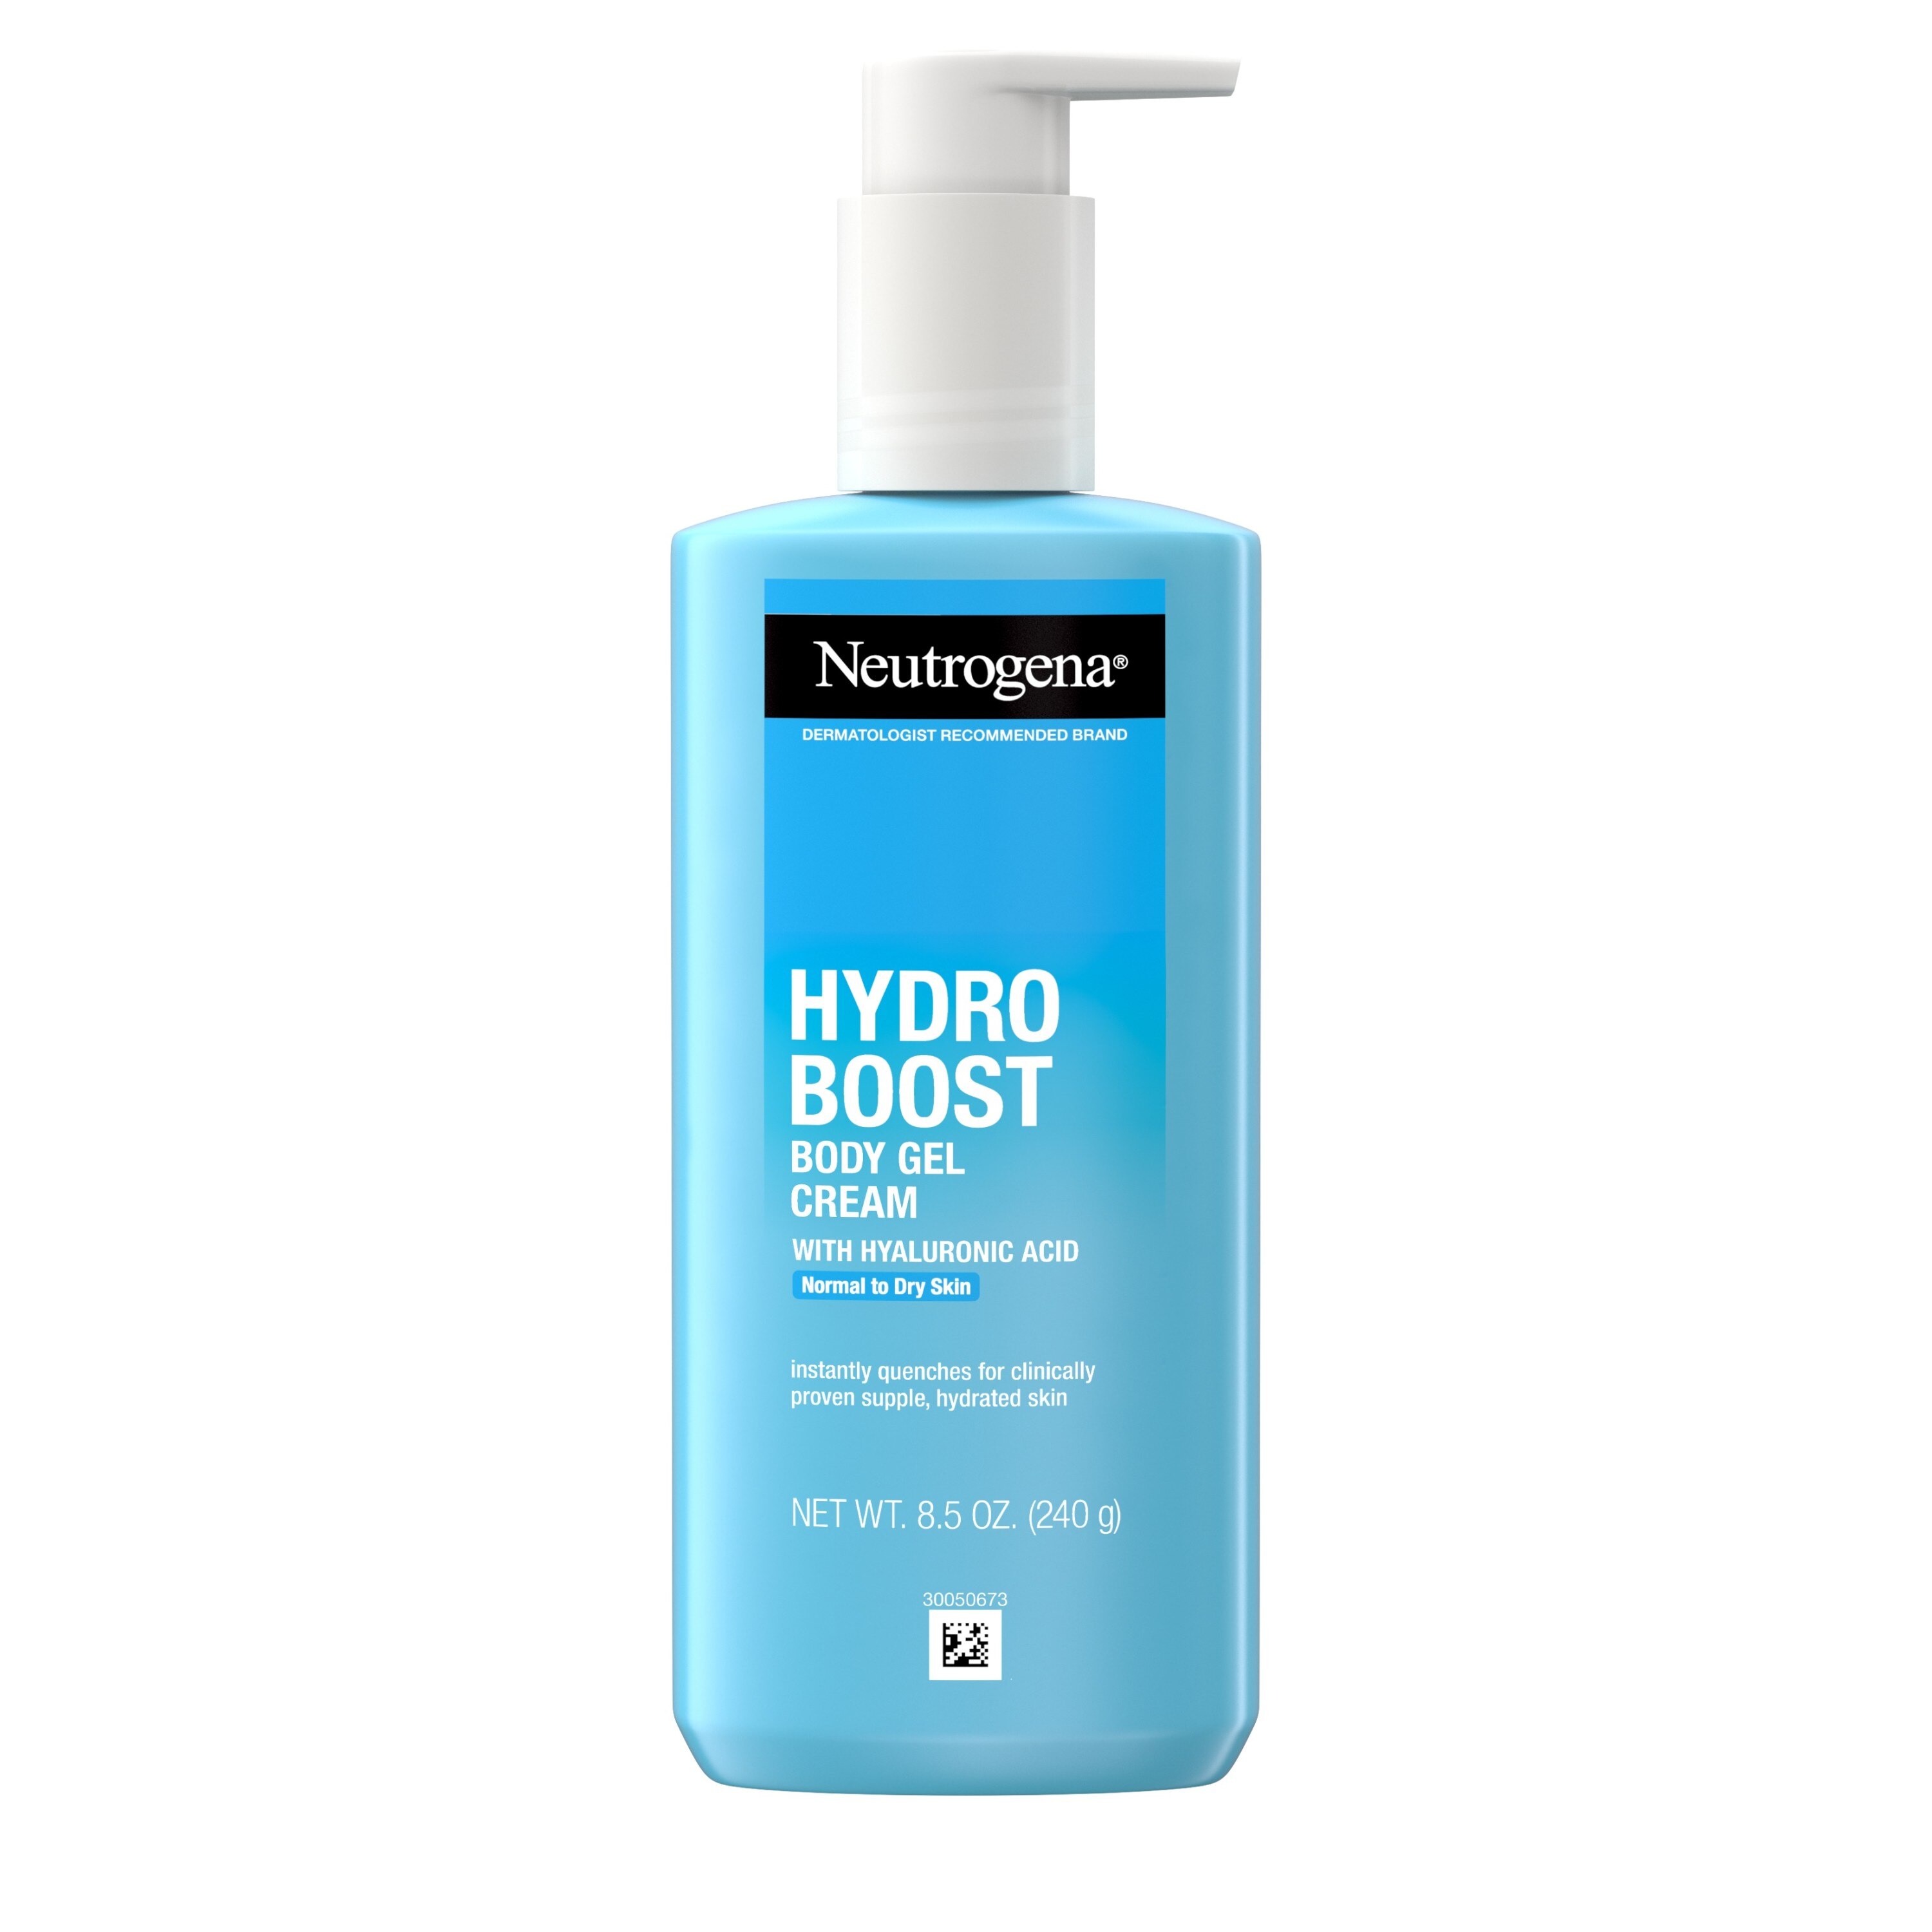 Neutrogena Hydro Boost - Crema corporal en gel con ácido hialurónico, 8.5 oz